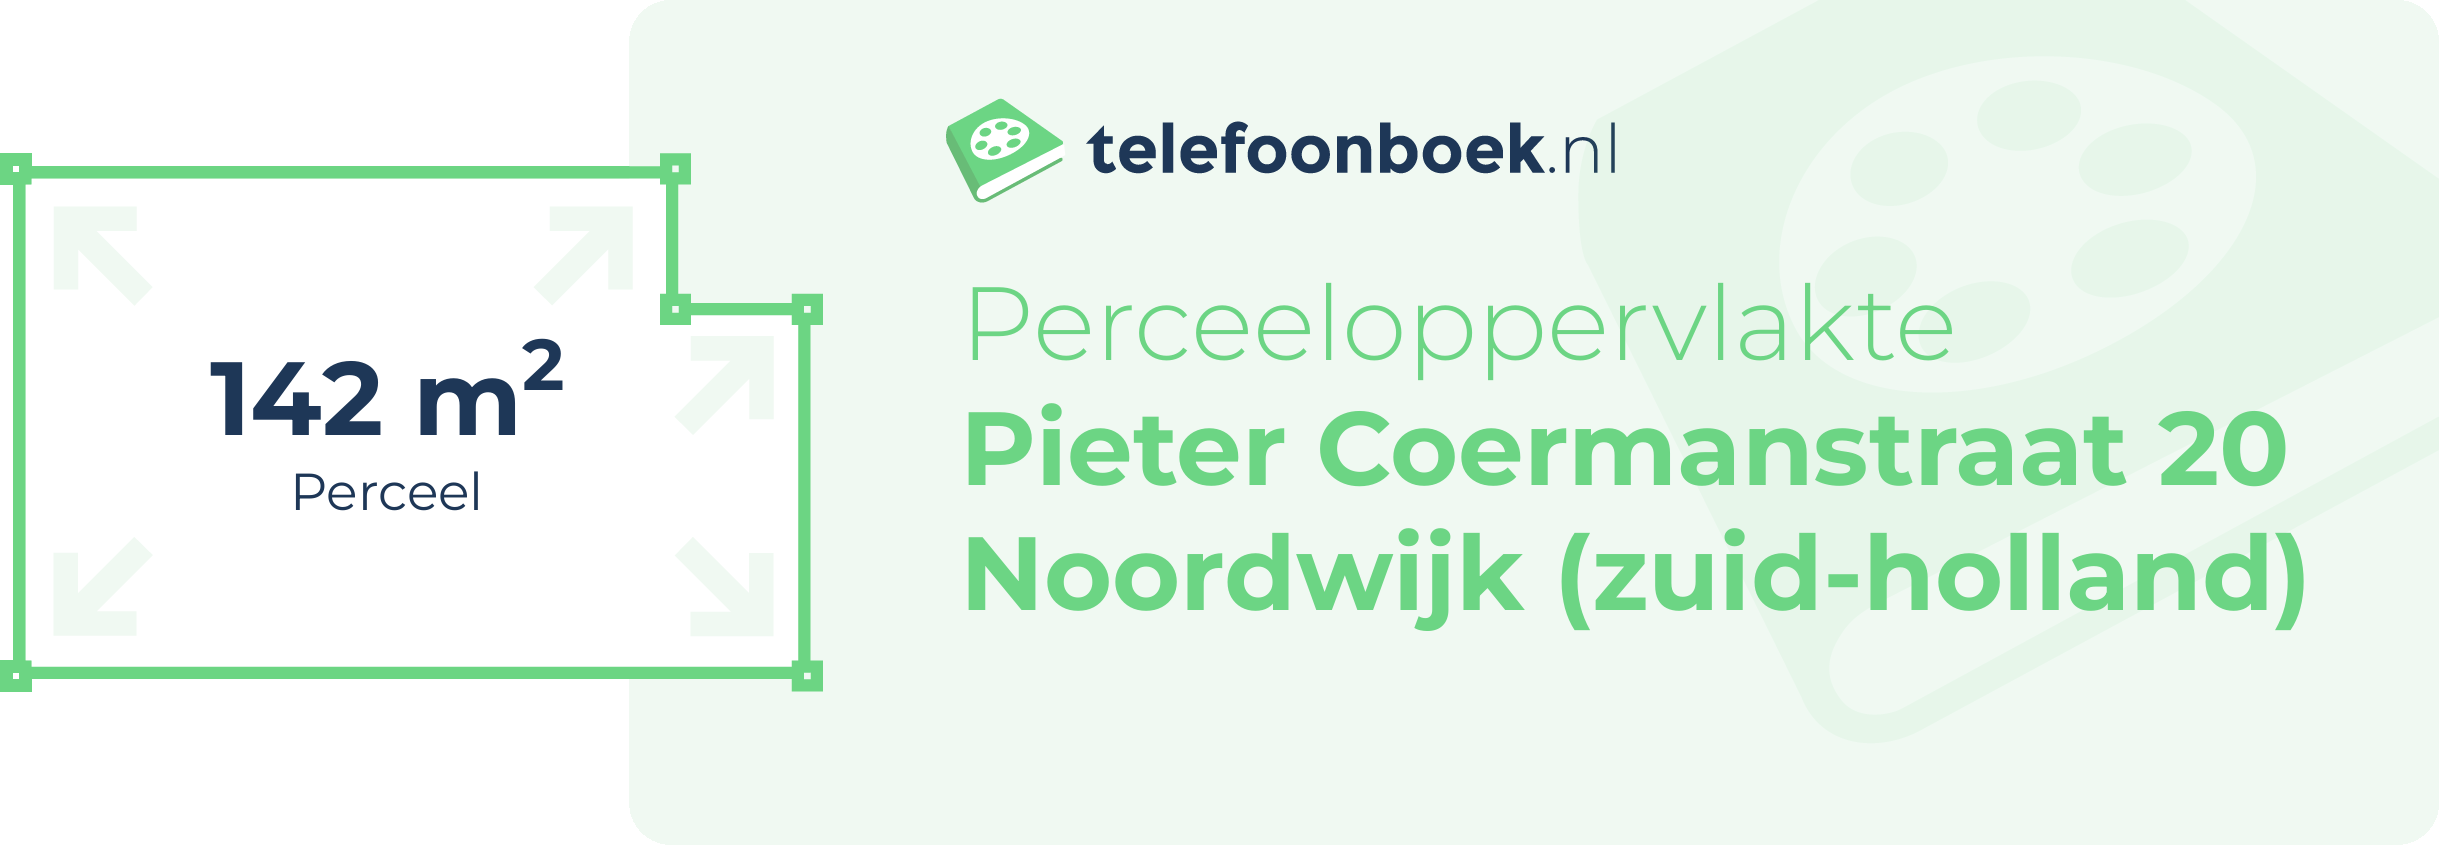 Perceeloppervlakte Pieter Coermanstraat 20 Noordwijk (Zuid-Holland)